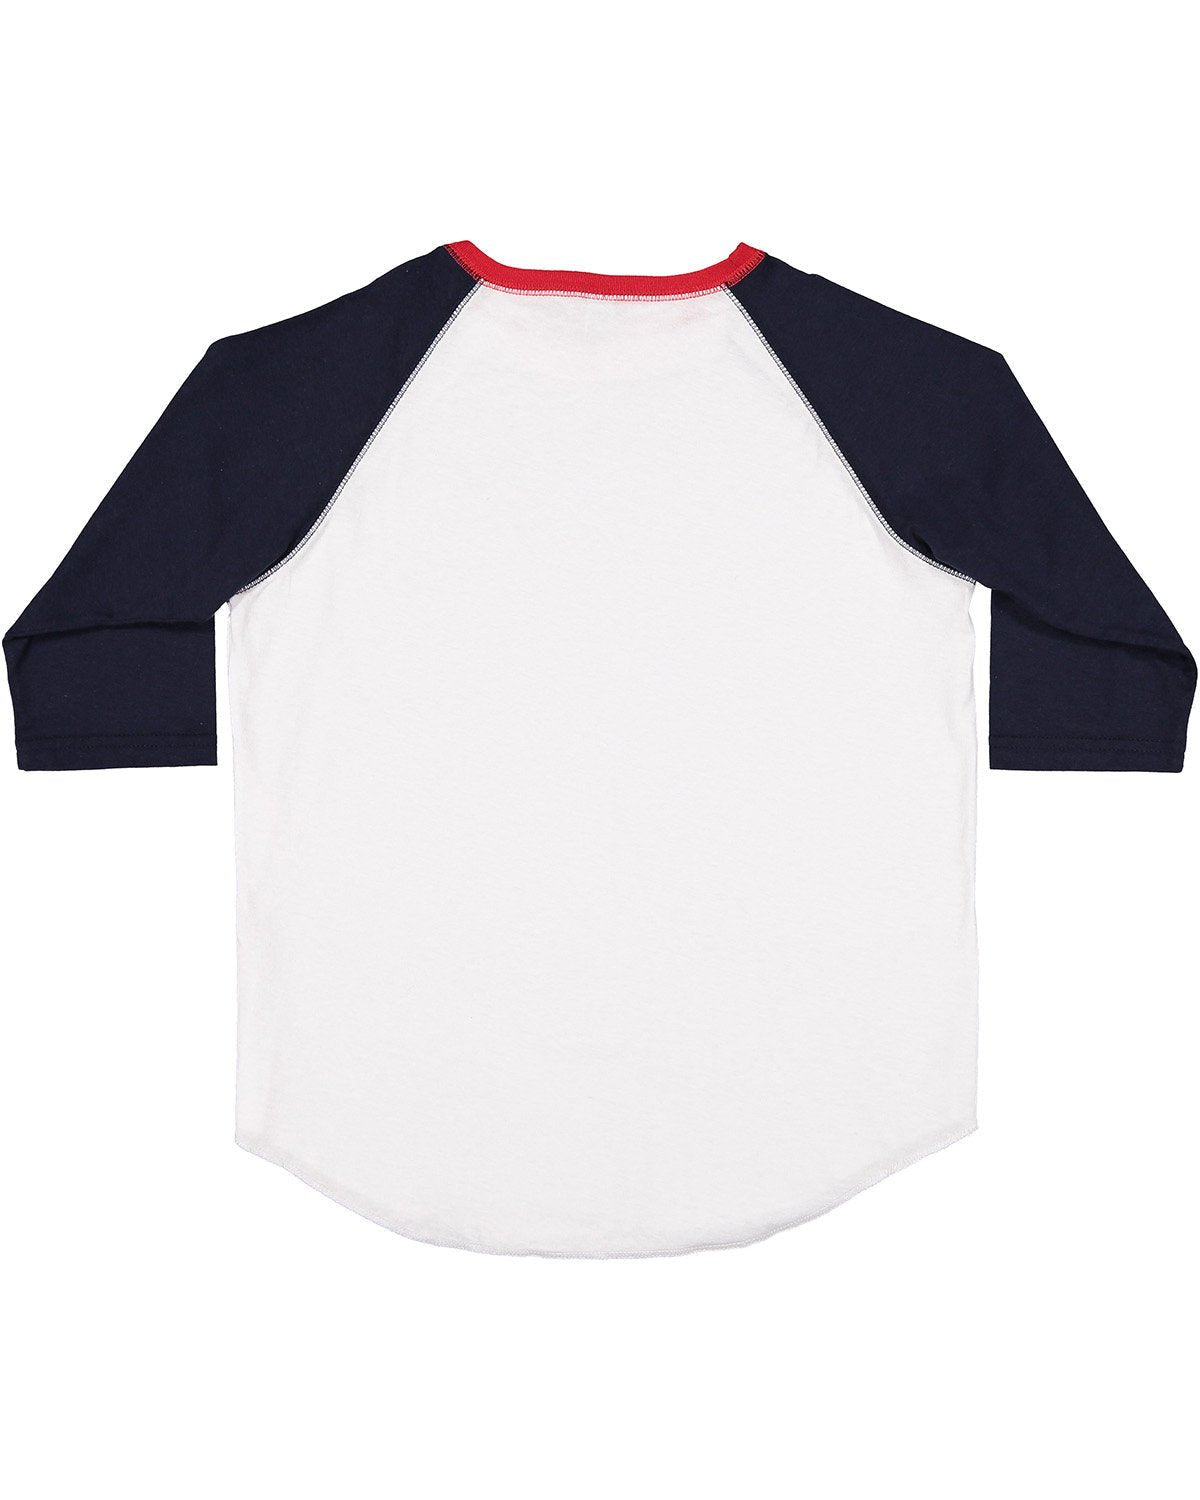 6130-LAT-WHITE/ NAVY/ RED-LAT-T-Shirts-2